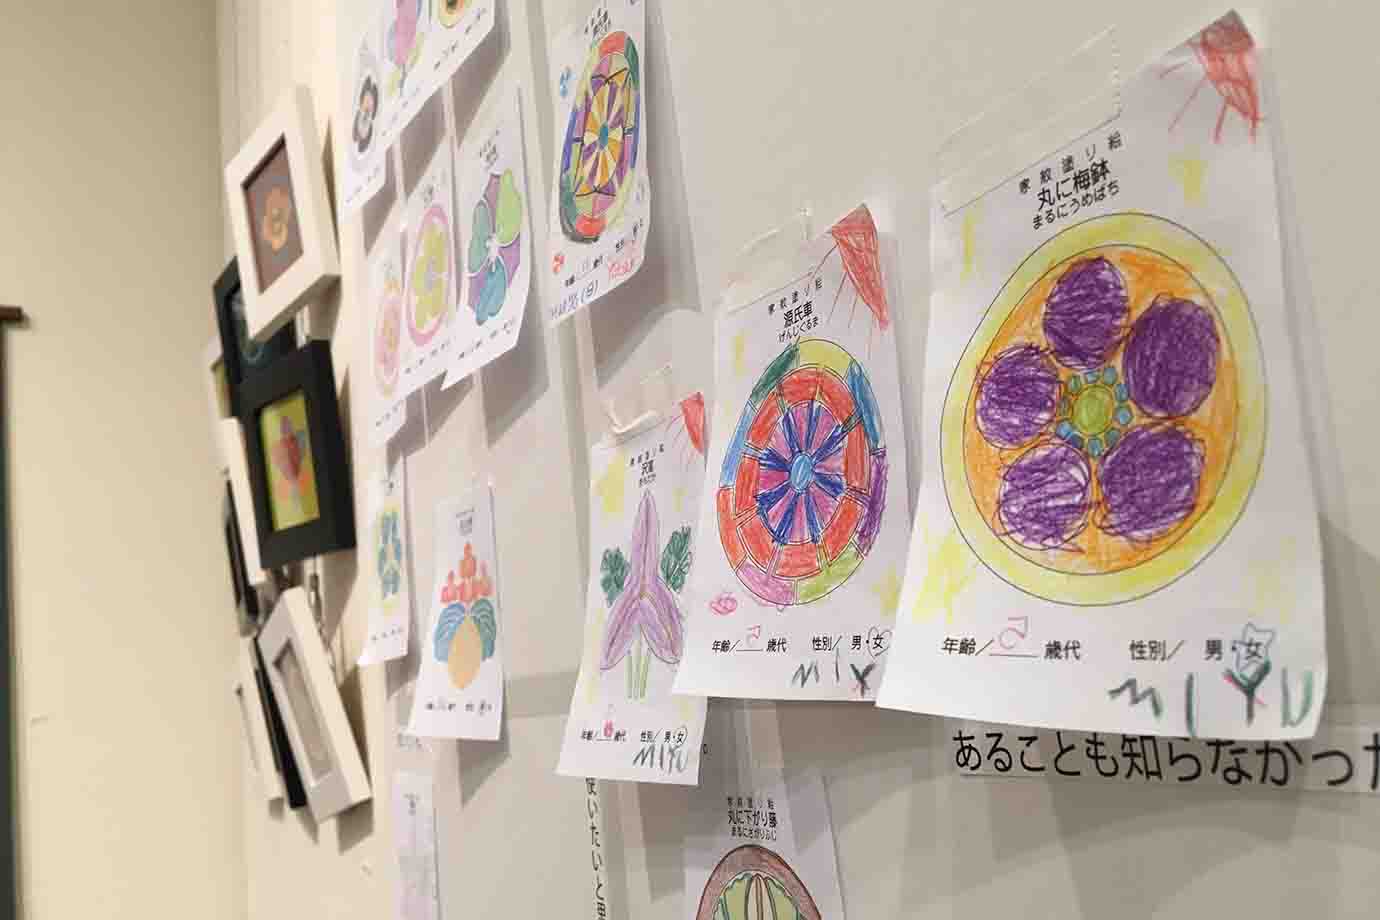 私は愛知県内で何度か家紋を紹介する展覧会をしています。会場では、初対面の私に先祖の話や親族のことを思い出し、お話しくださる方がとても多いです。